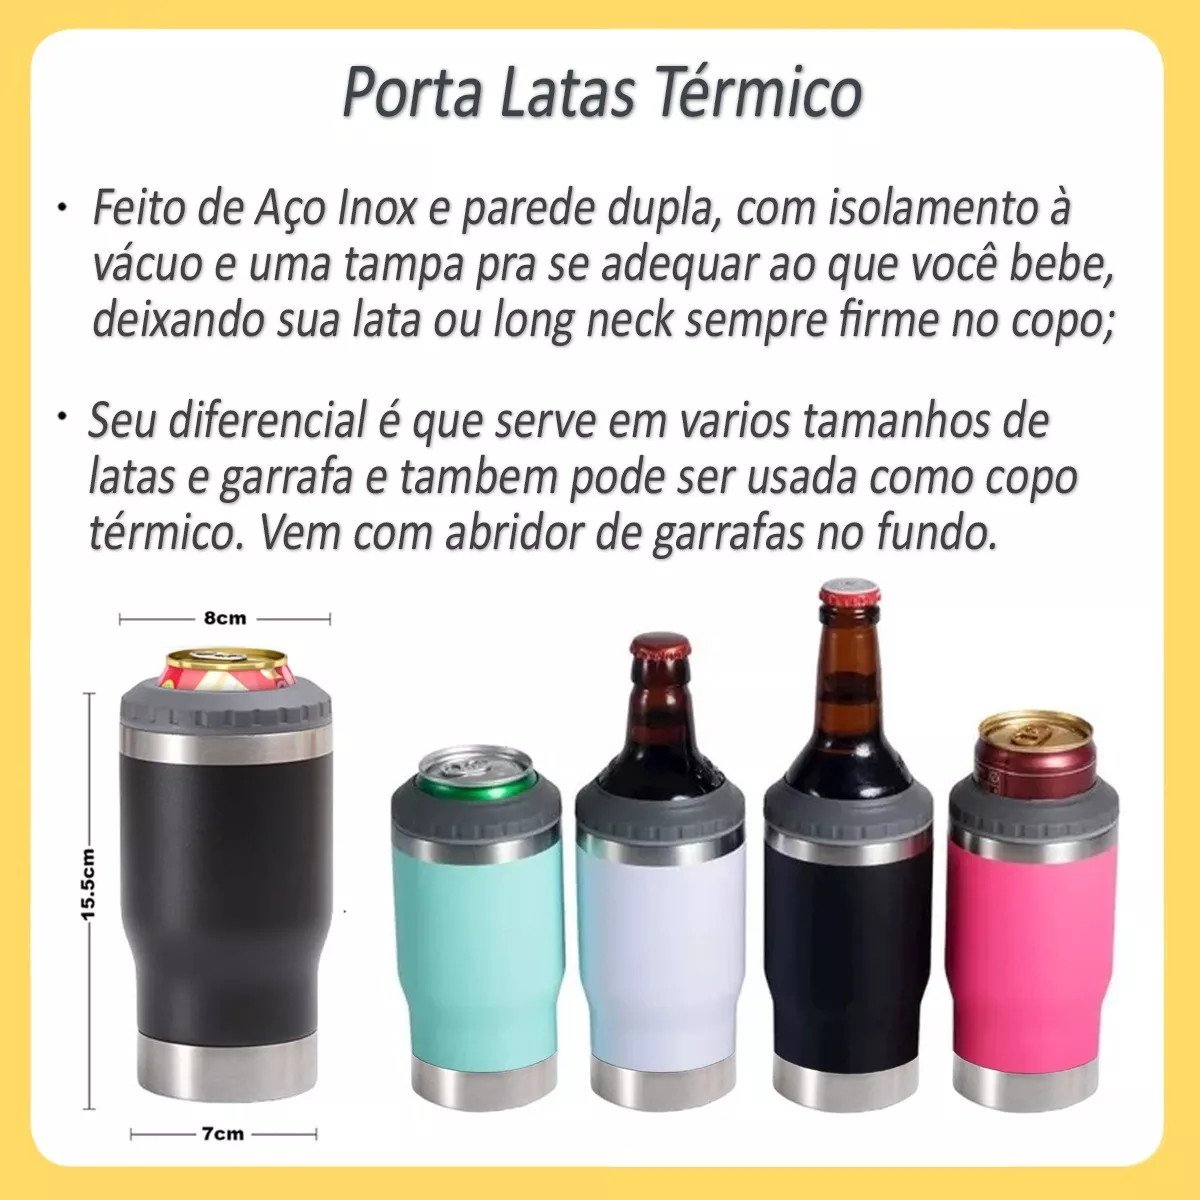 Copo Térmico Long Neck Cerveja Latinha Latão Litrinho Preto - 3